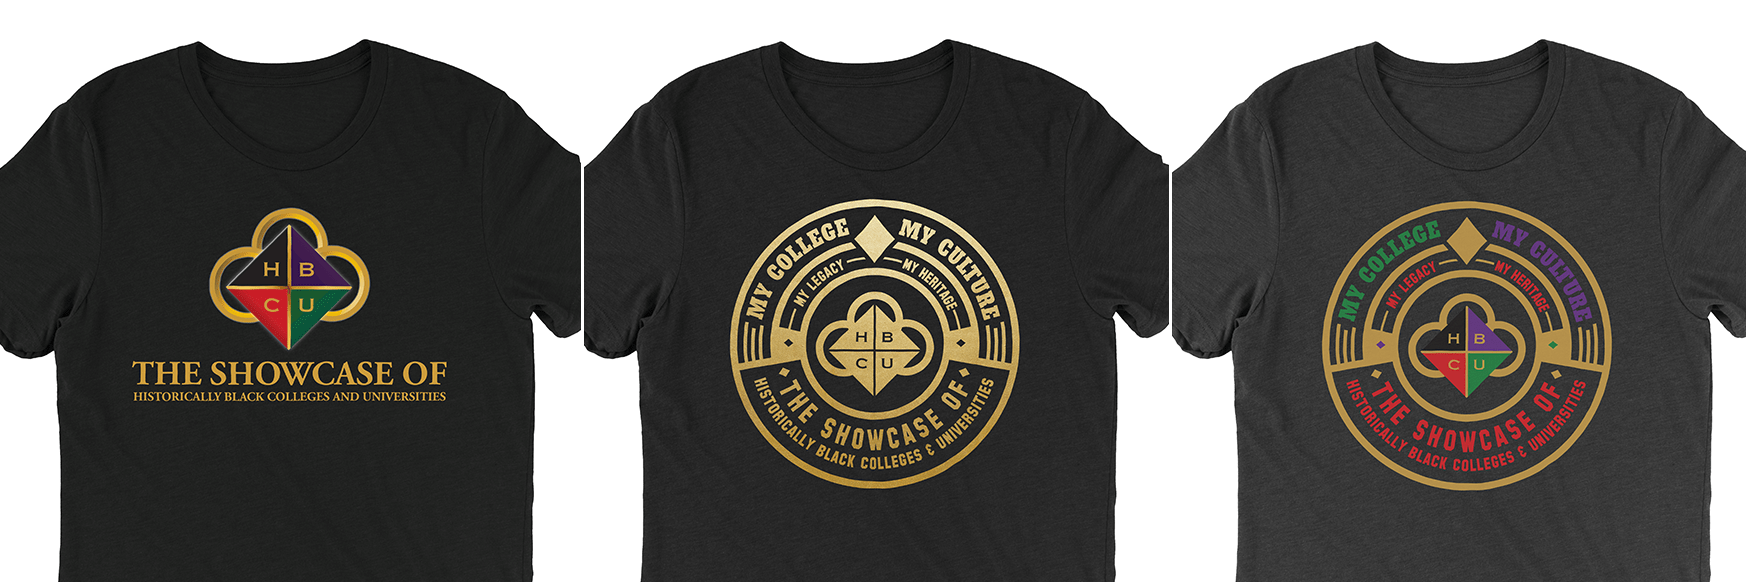 2019 Showcase t-shirt designs